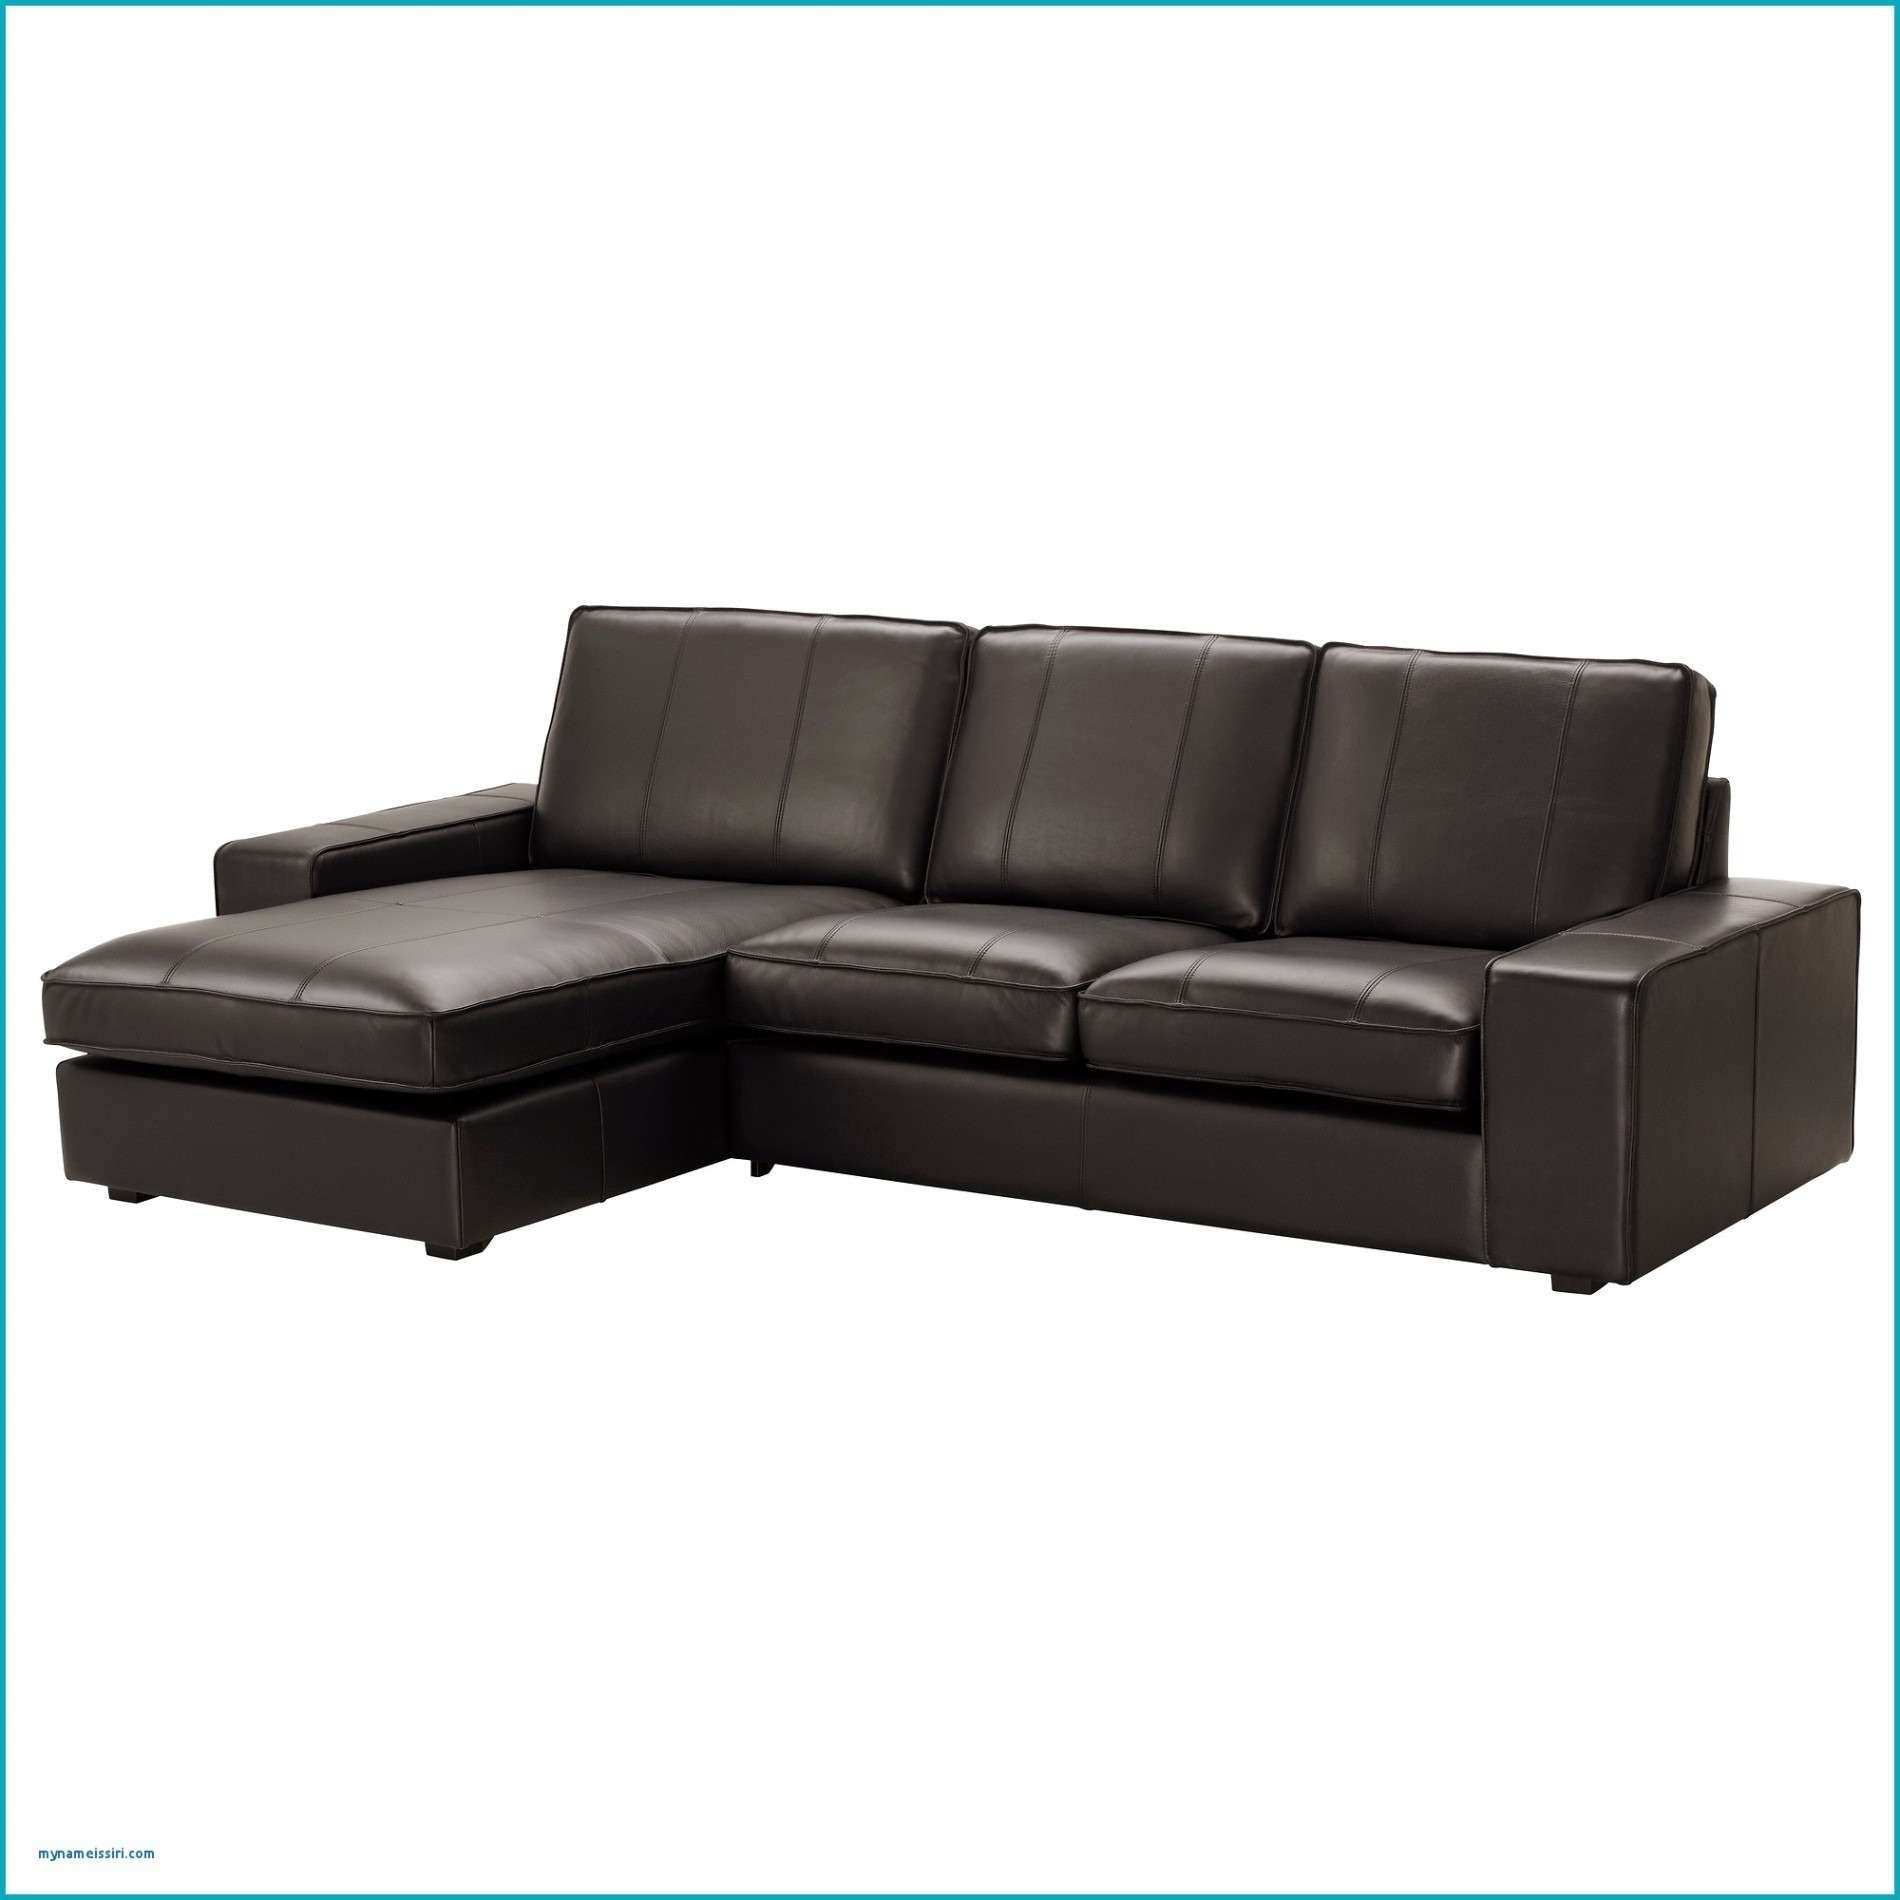 garten couch gunstig das beste von couch grau gunstig elegant sofas meinung von sofa klein gunstig of sofa klein gunstig